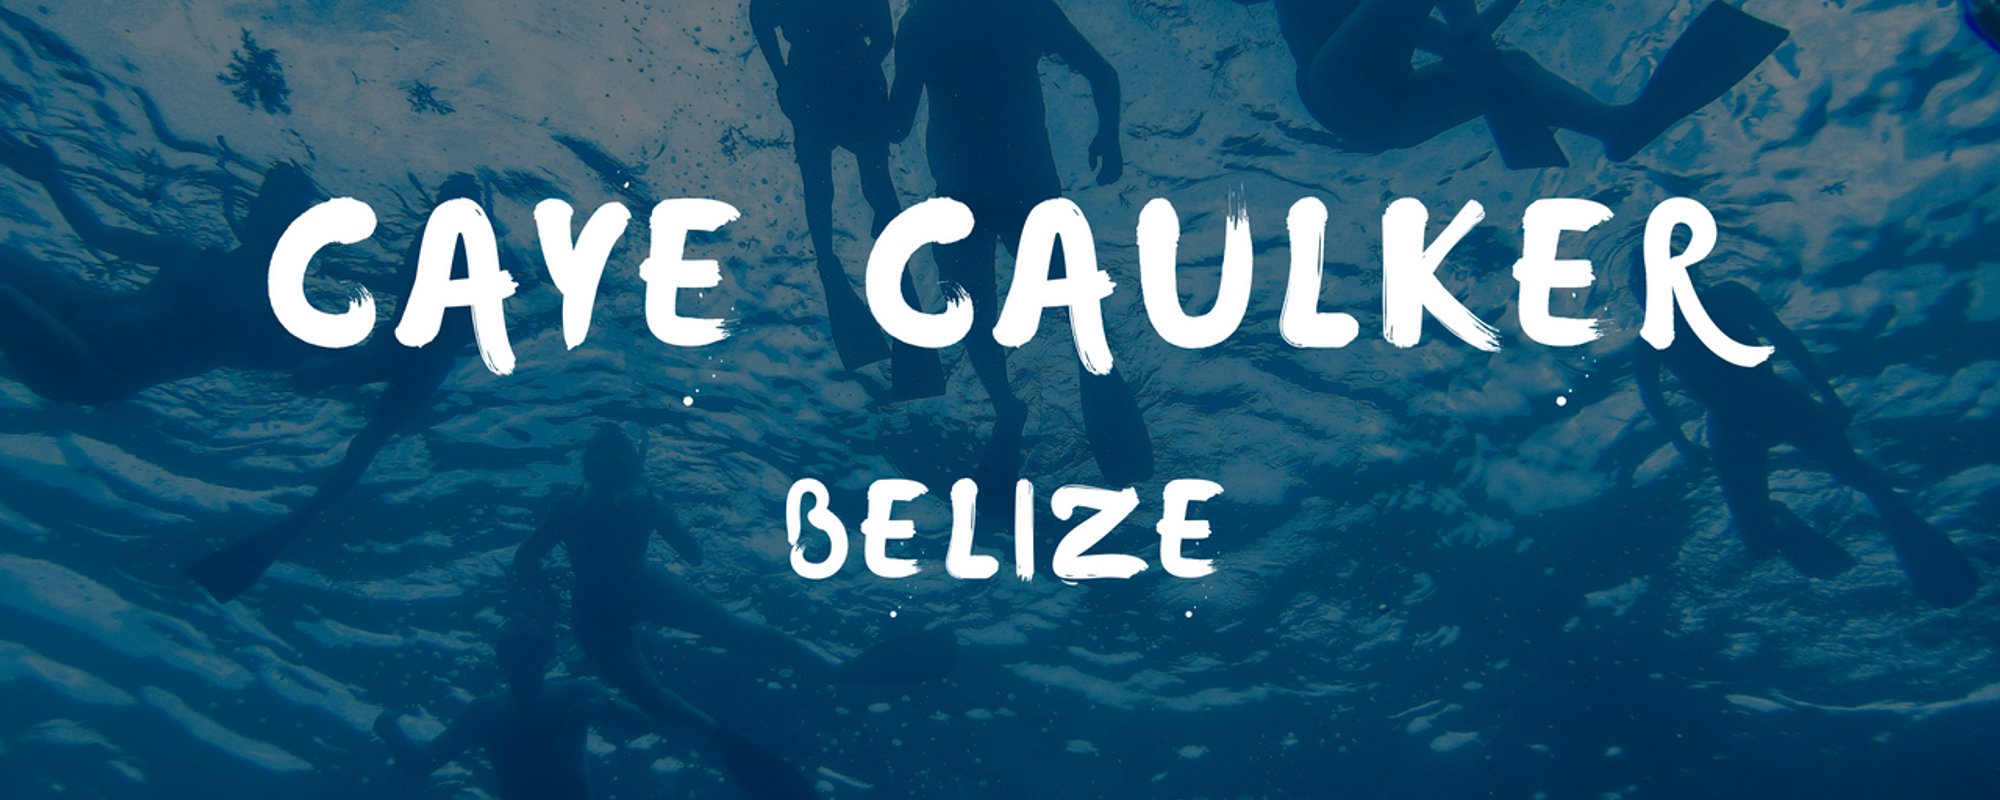 Tips and tricks Caye Caulker - Belize